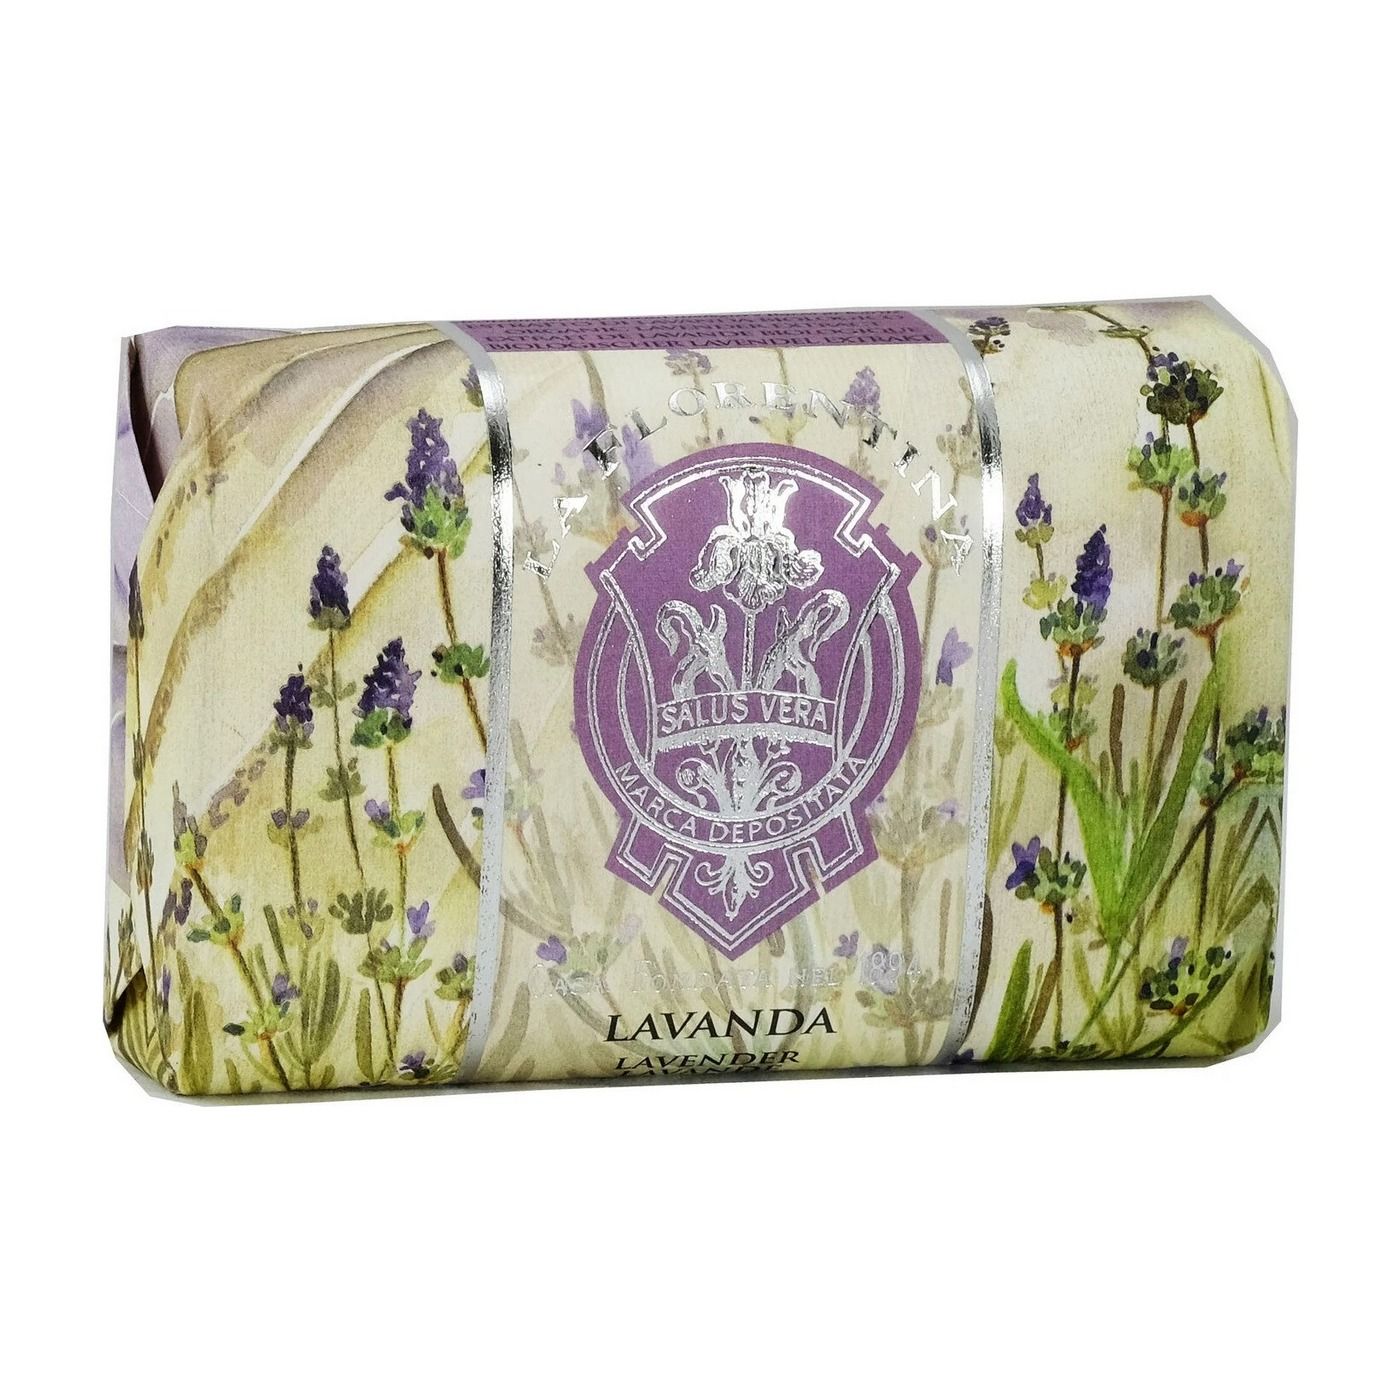 La Florentina Hand Soap Lavender Мыло для рук с экстрактом Лаванды 200 гр